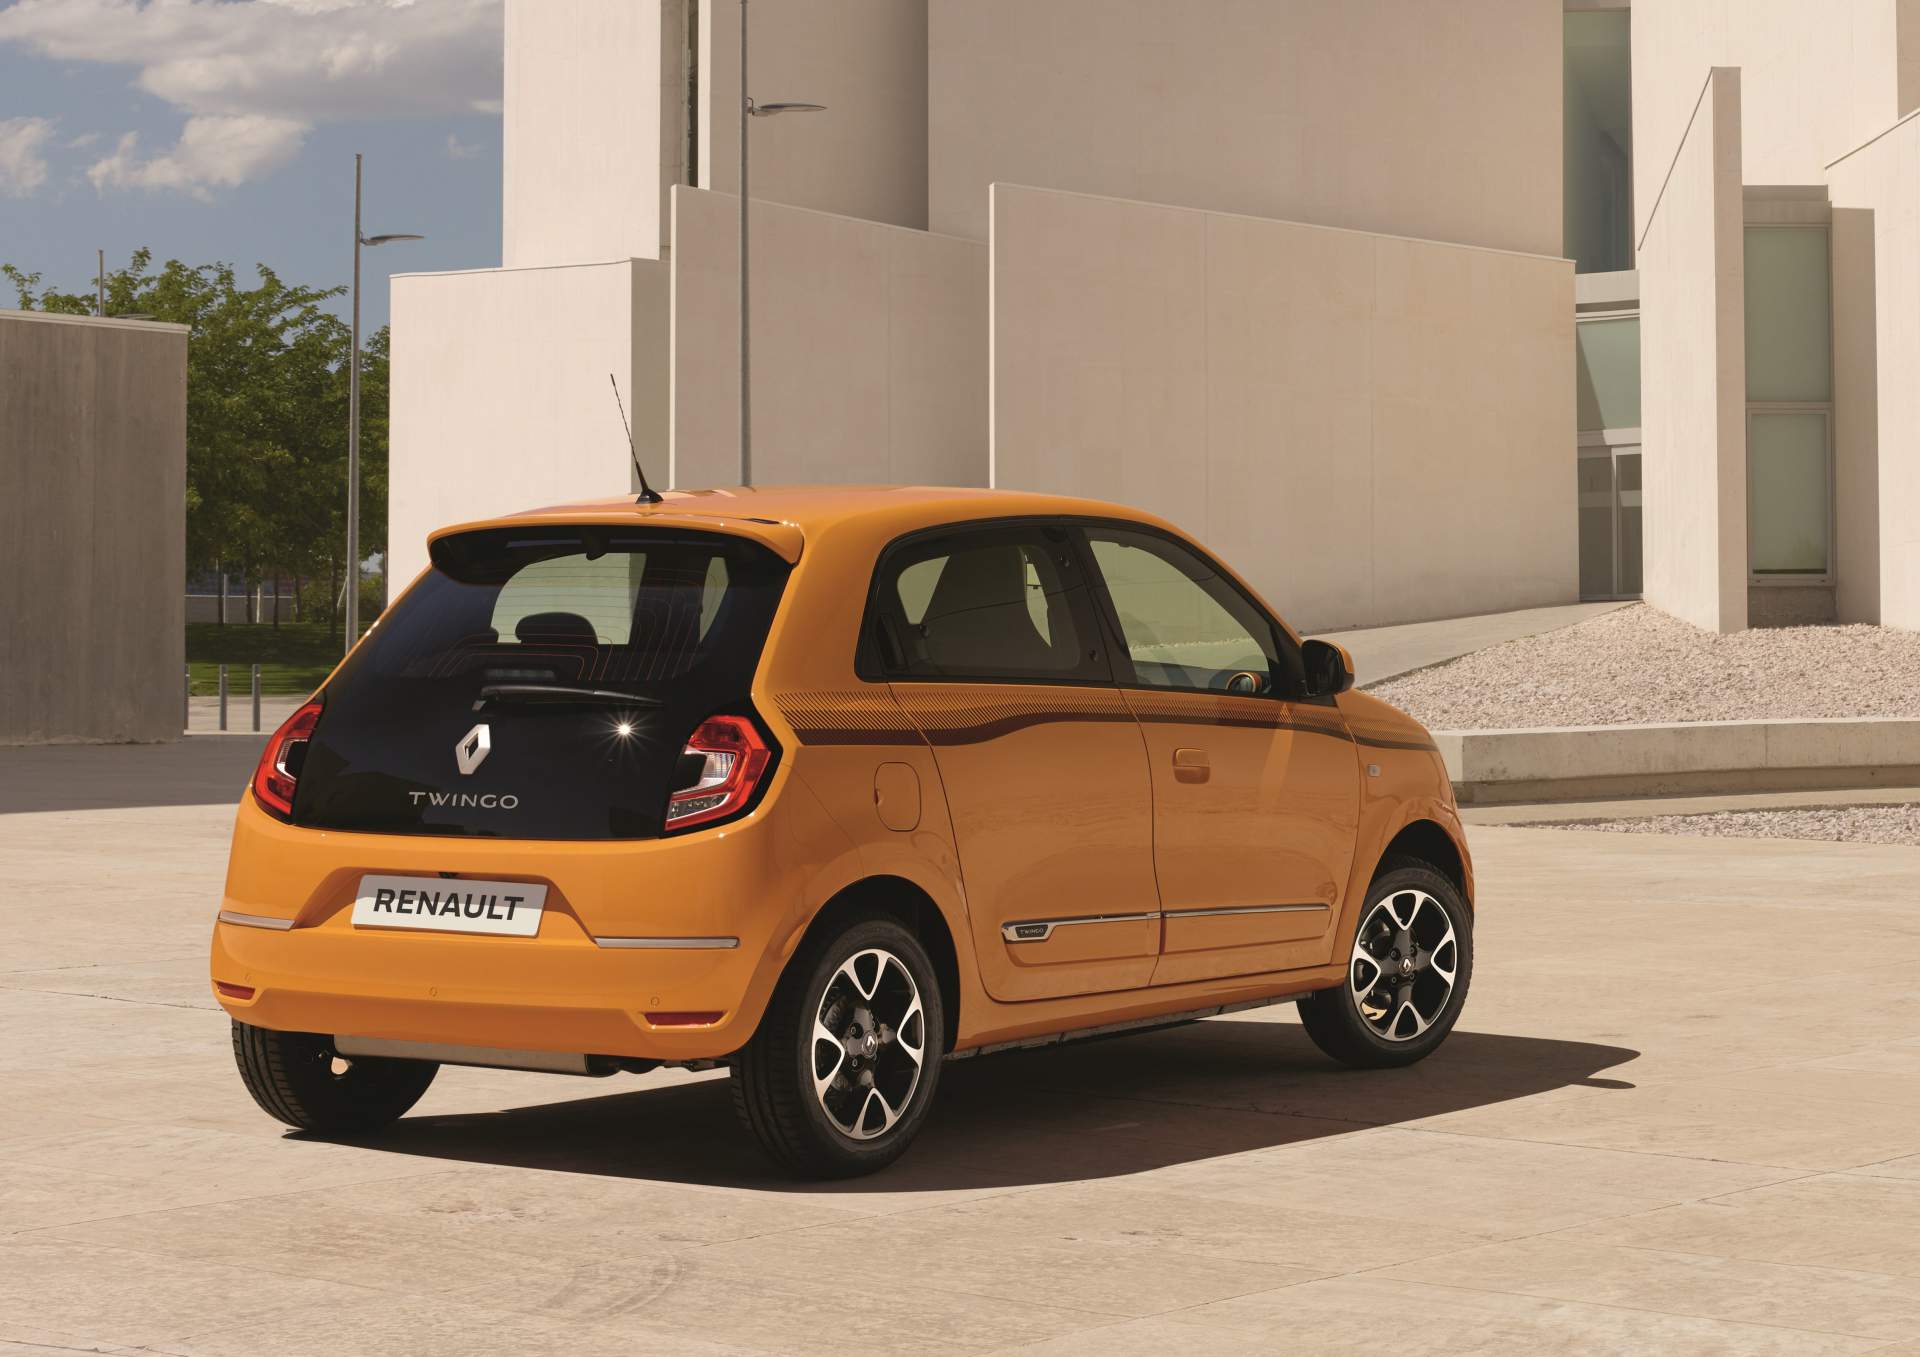 2019 Renault Twingo tanıtıldı: Yeni renk ve motor seçenekleri